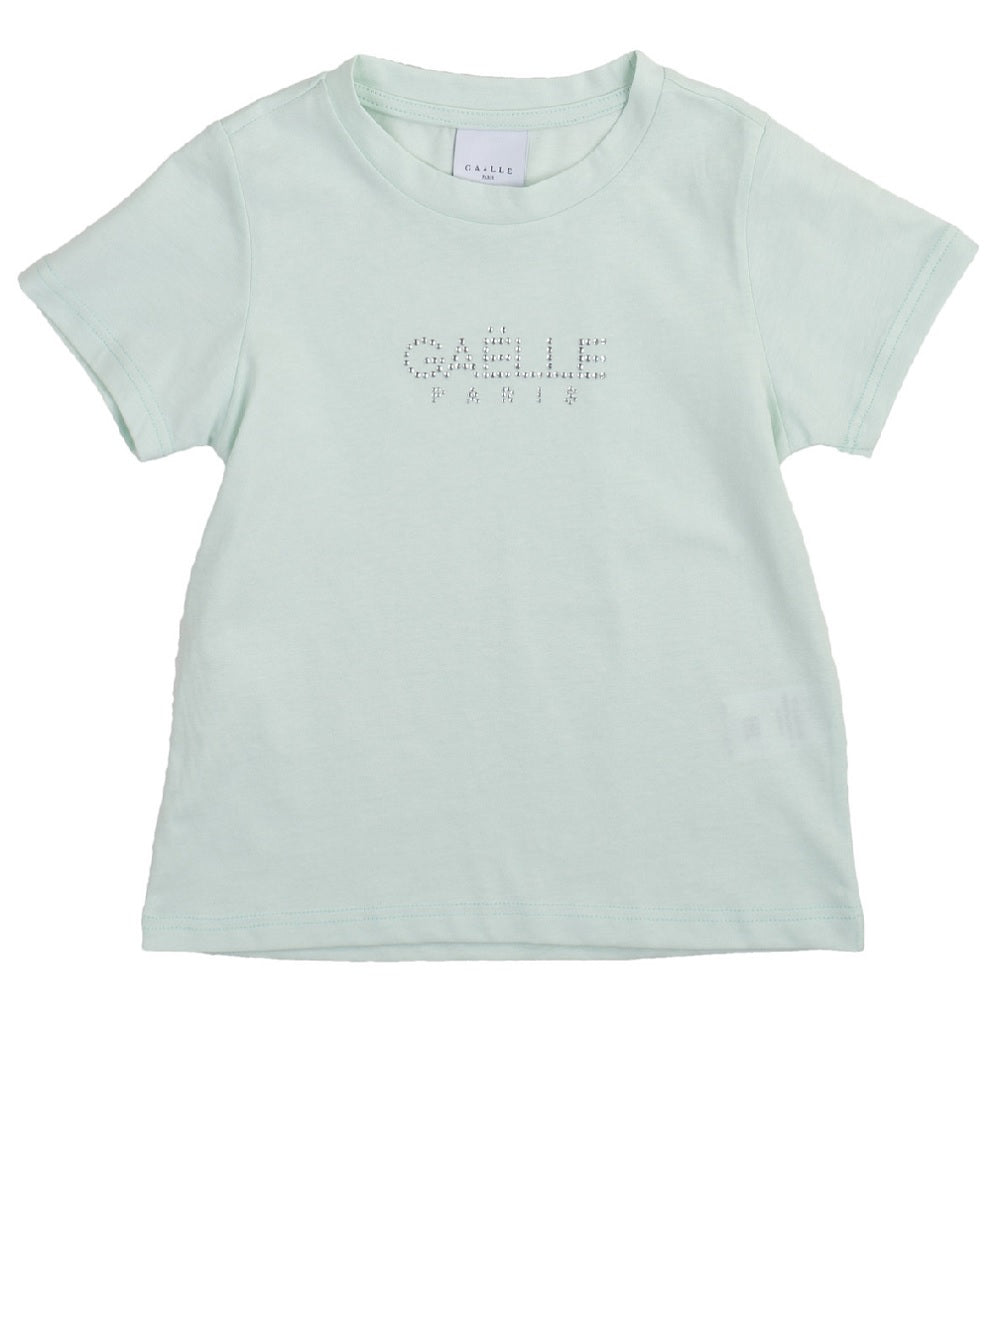 T-Shirt Gaelle modello 2746M0756 con logo al petto in strass.